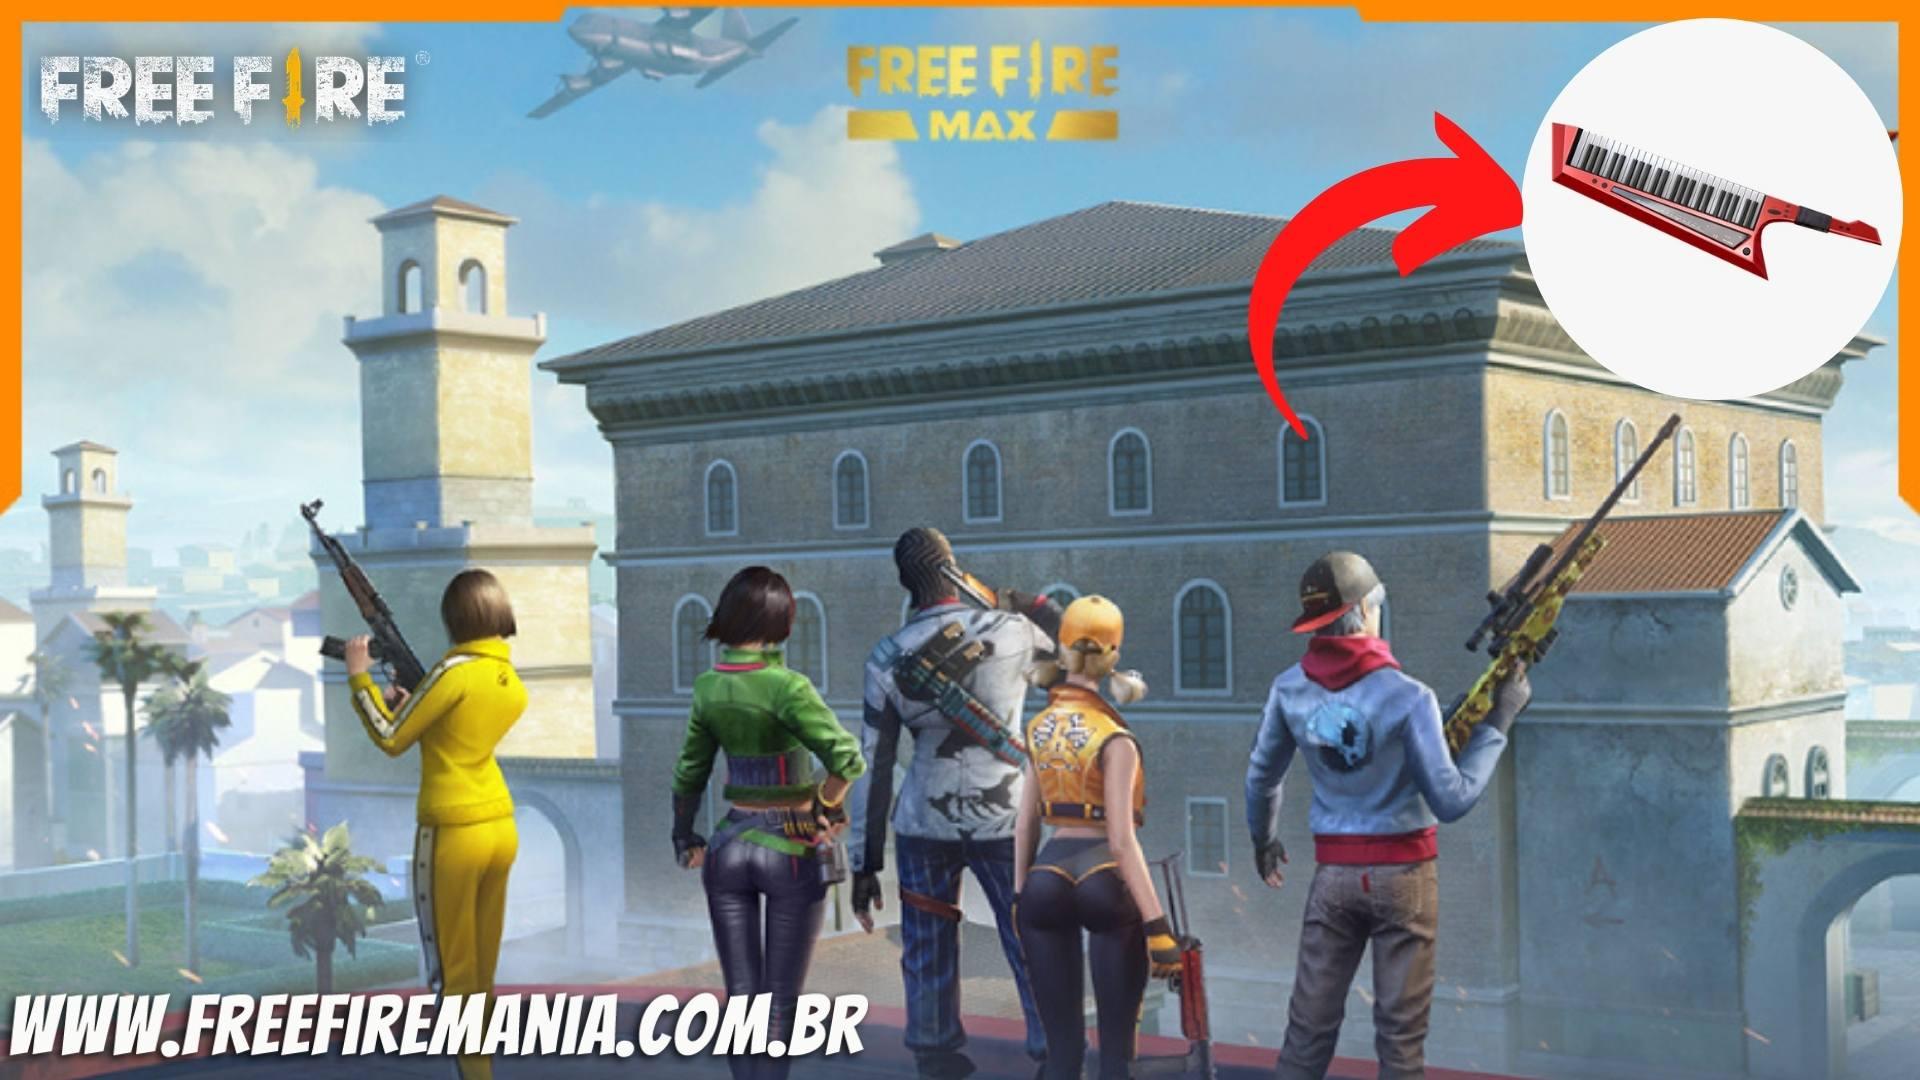 Free Fire recebe skin inédita e gratuita no Token de Rank março 2023